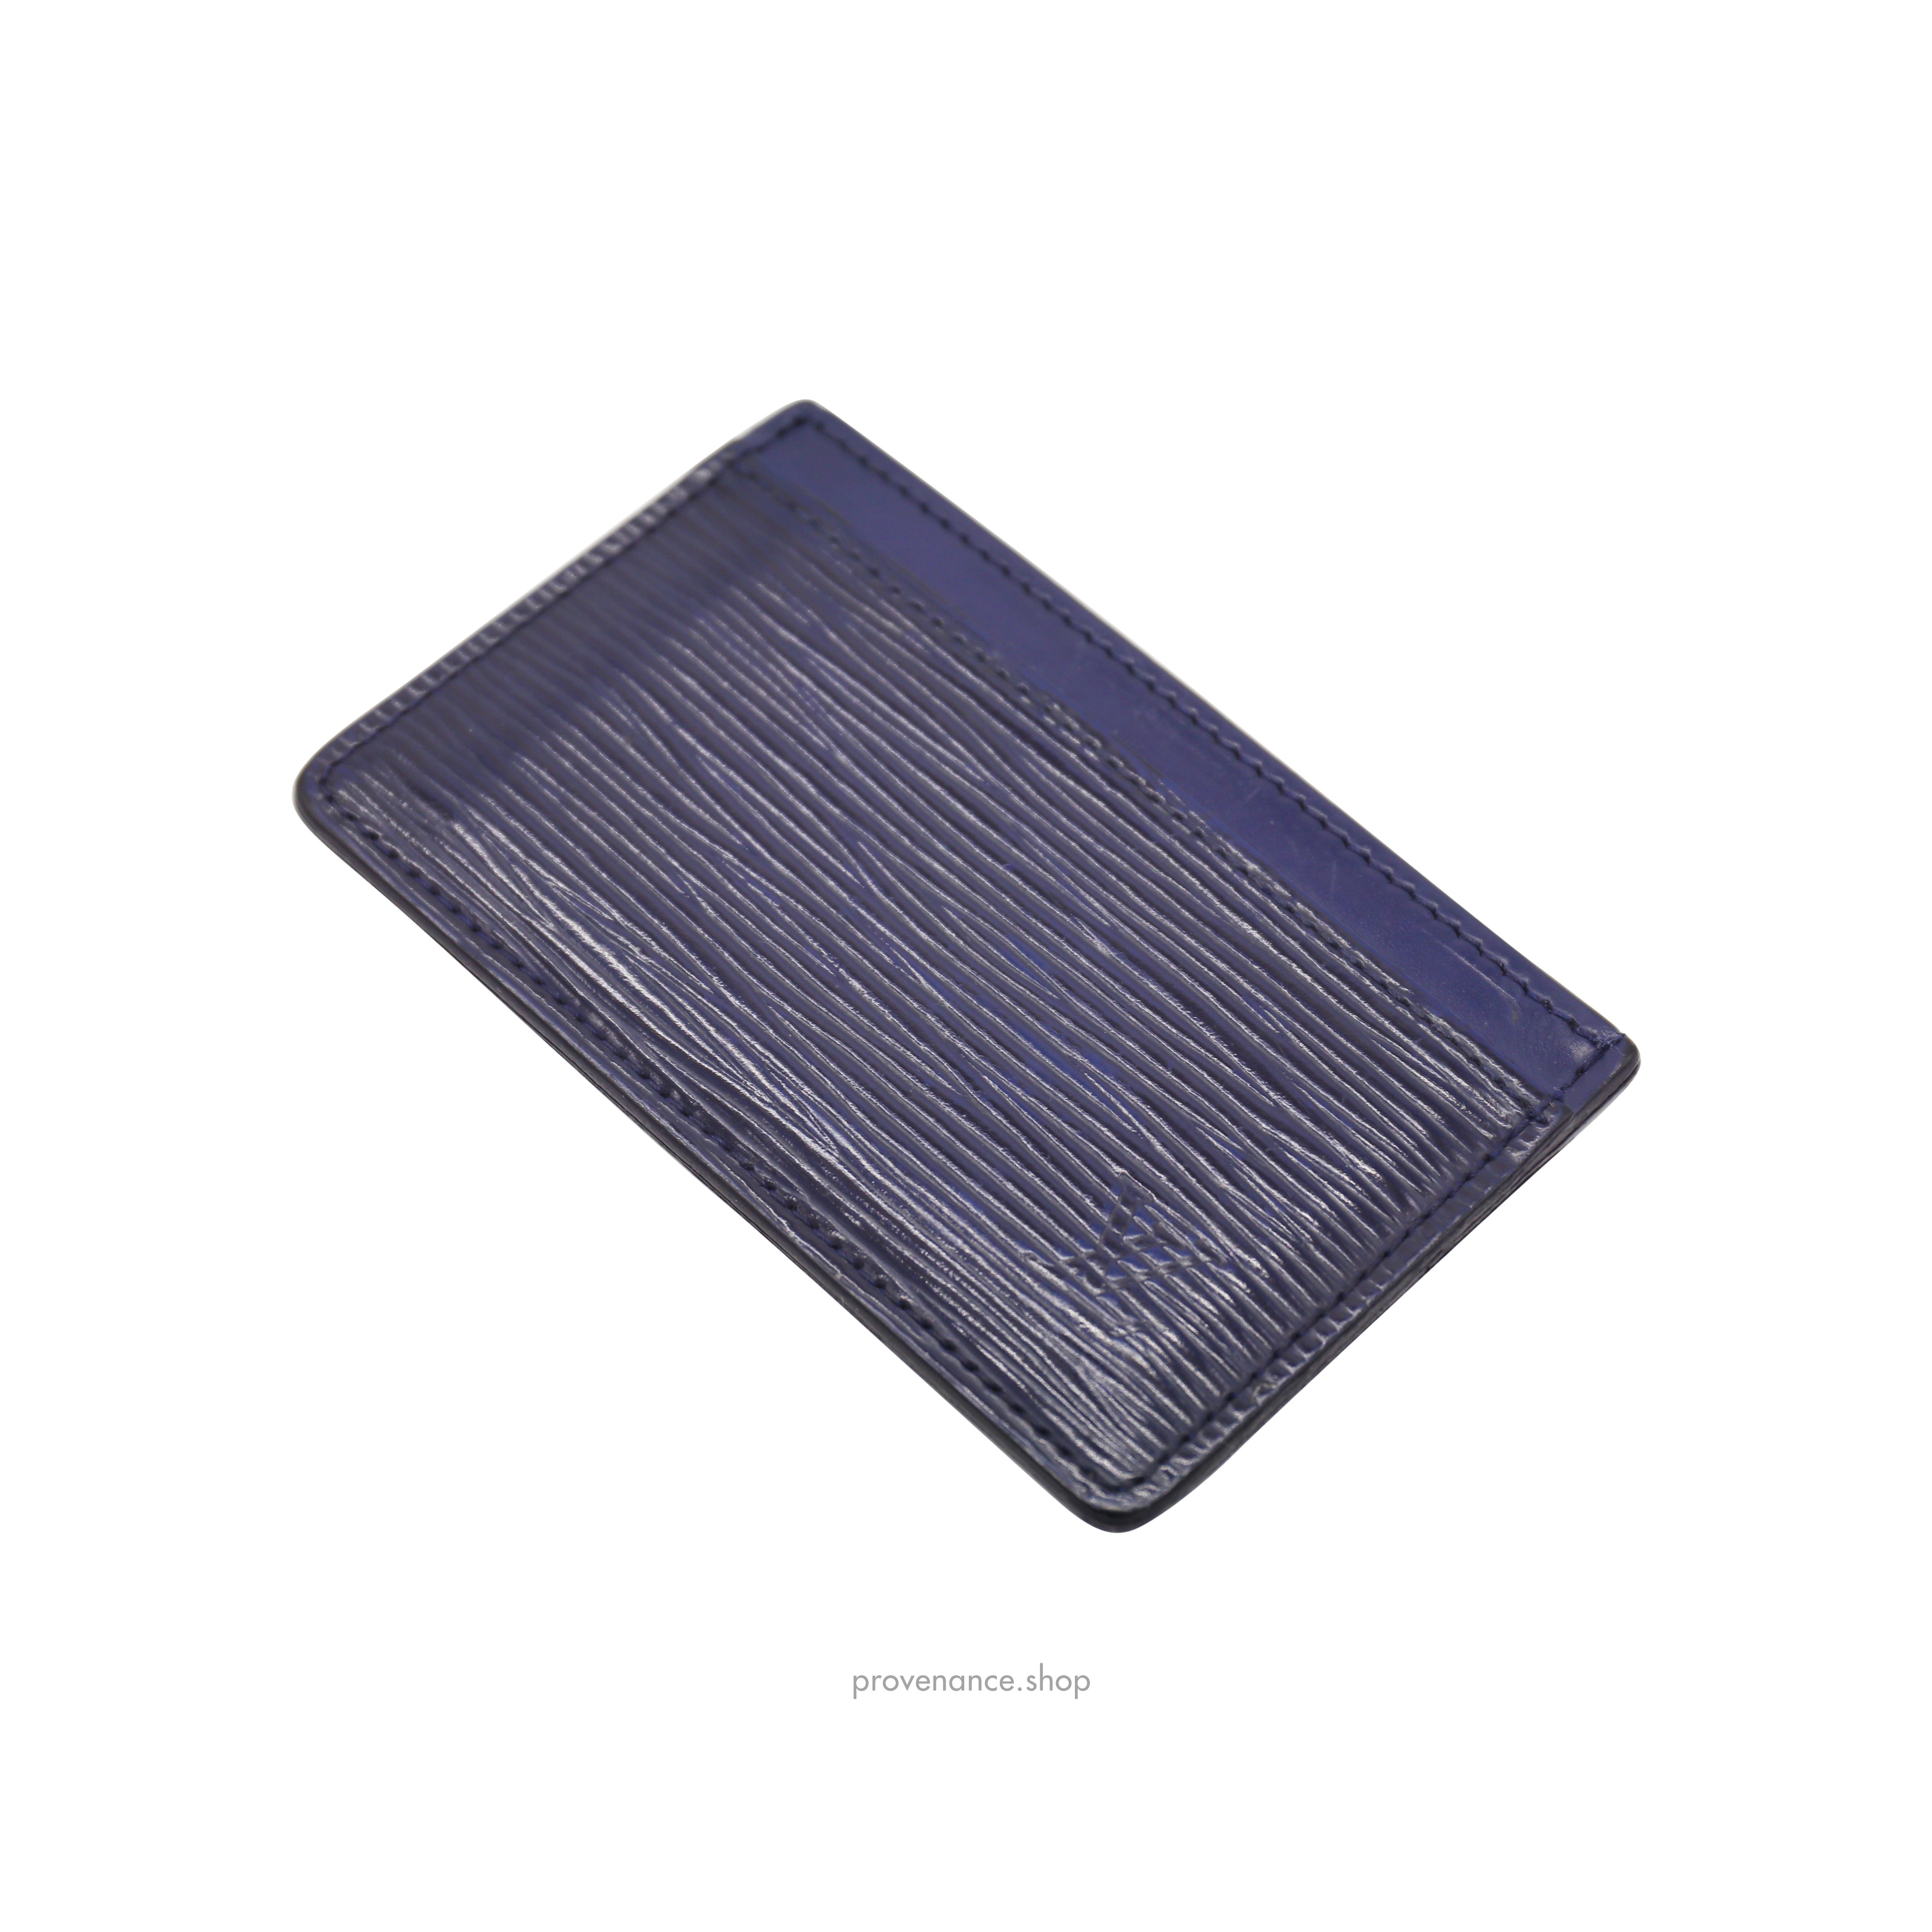 Card Holder Wallet - Navy Blue Epi Leather - 6